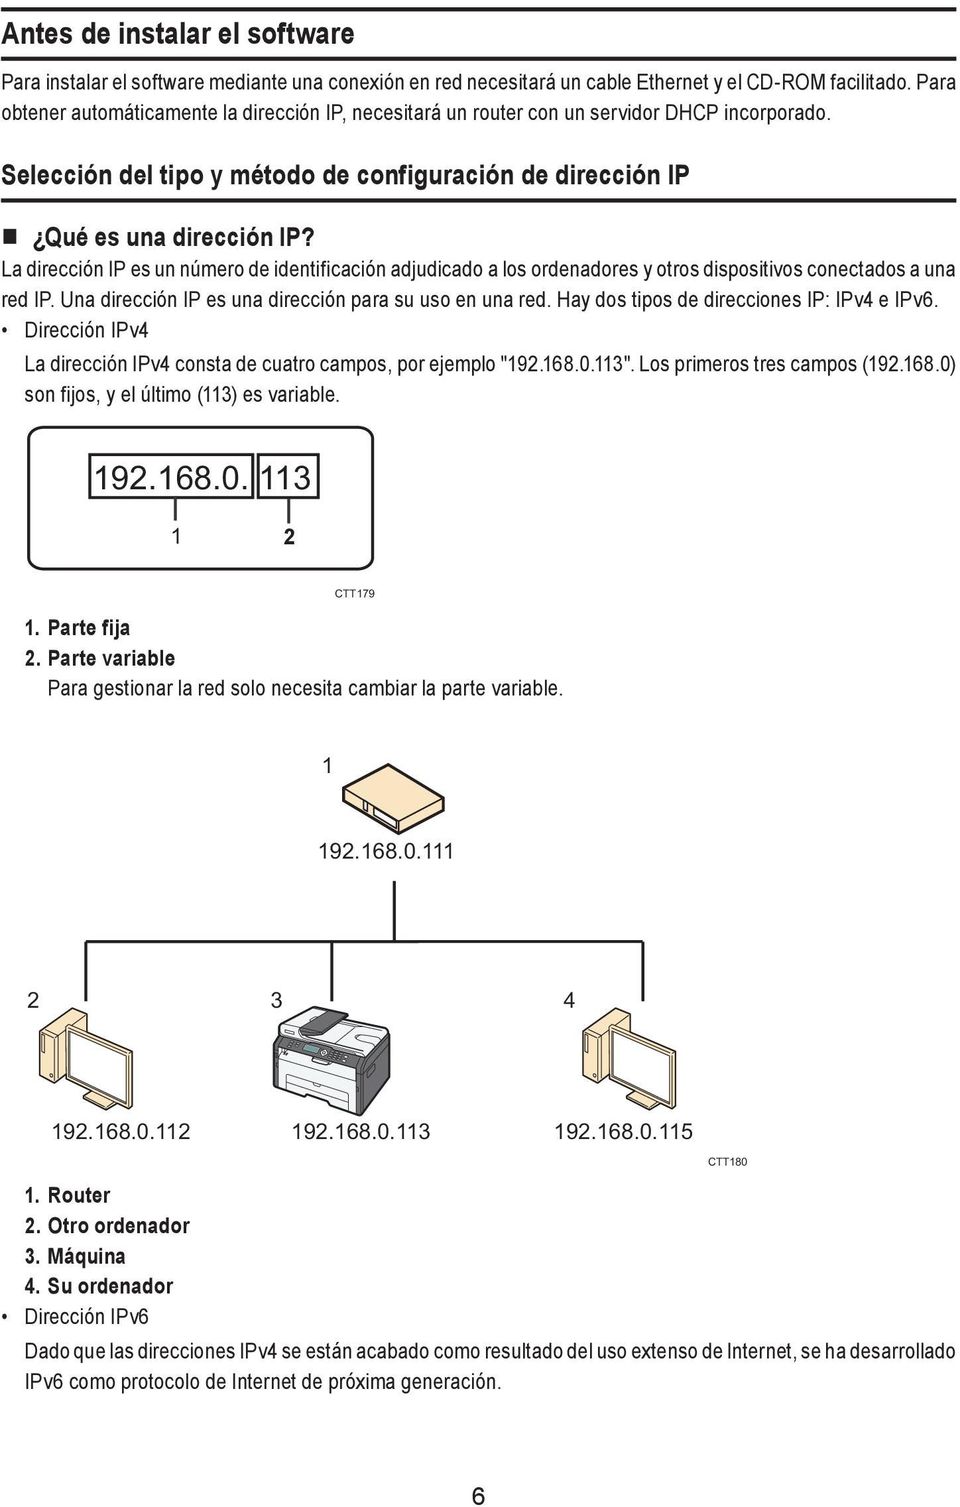 La dirección IP es un número de identificación adjudicado a los ordenadores y otros dispositivos conectados a una red IP. Una dirección IP es una dirección para su uso en una red.